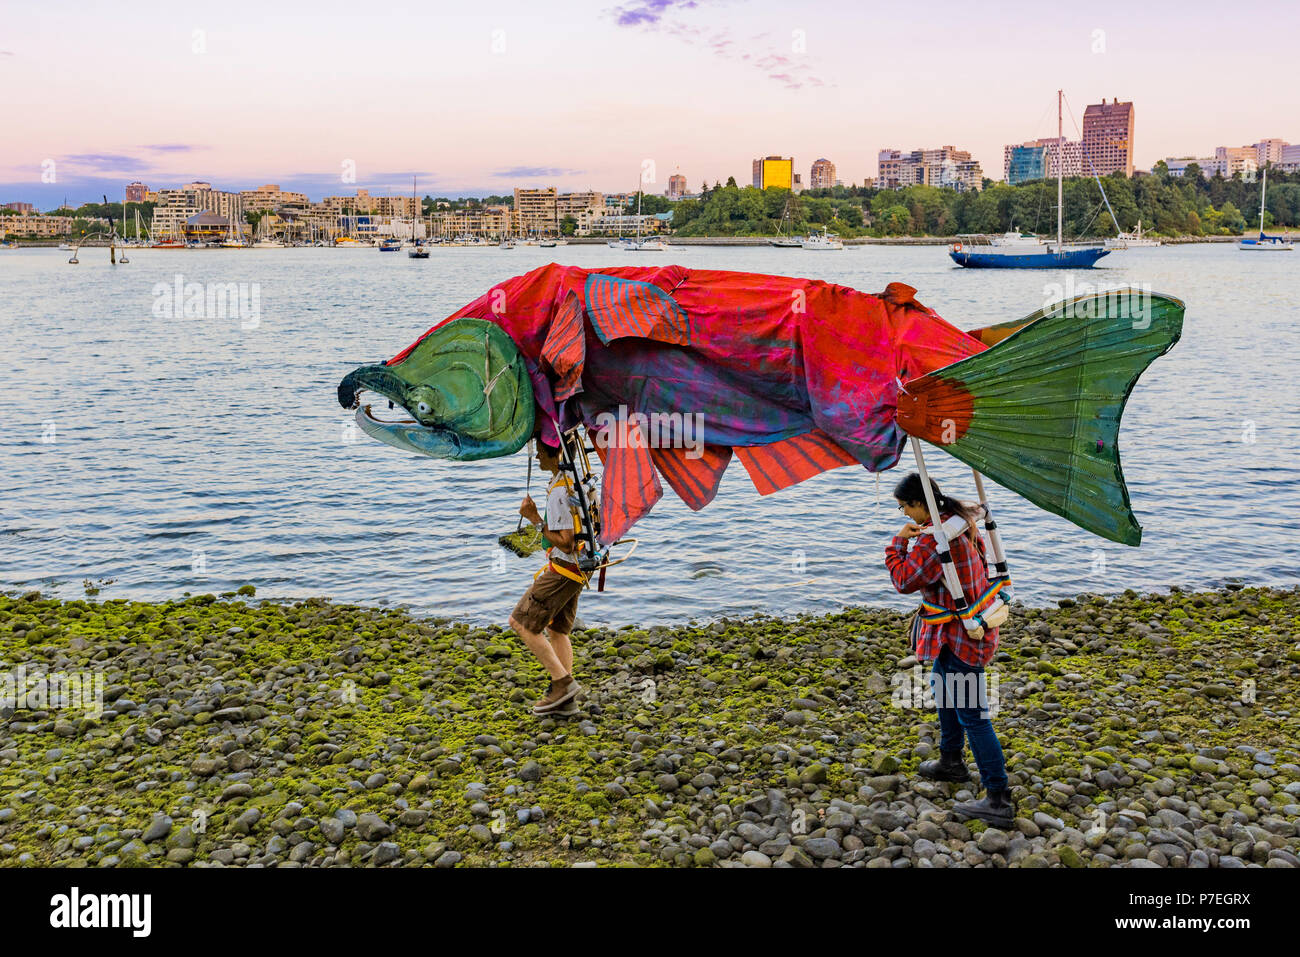 Marionnette de saumons rouges, Gathering Festival, célébration du solstice d'été, False Creek, Vancouver, British Columbia, Canada. Banque D'Images